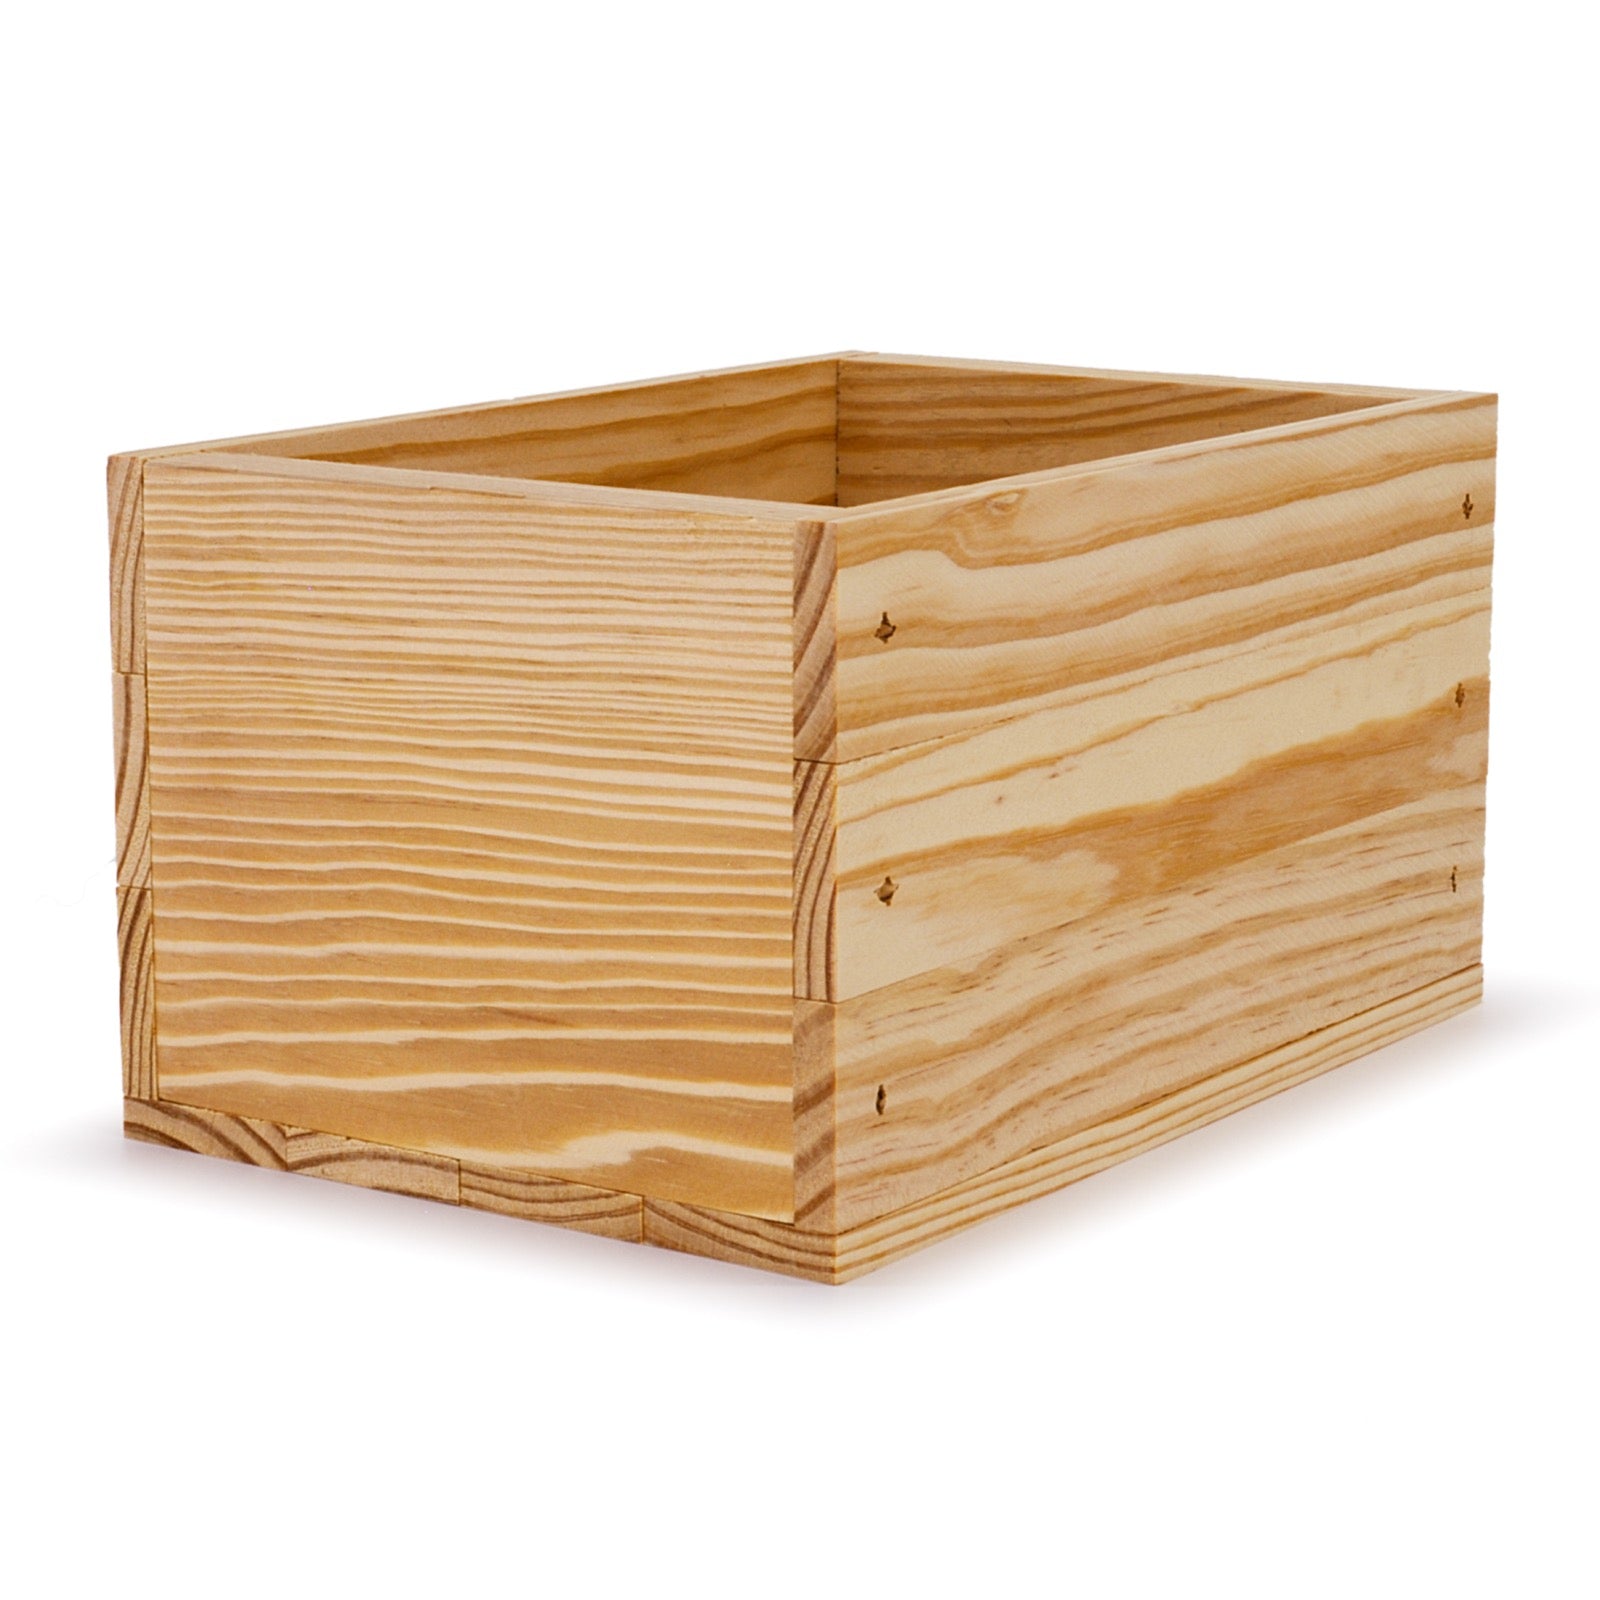 Small wooden crate 9x6.25x5.25, 6-BX-9-6.25-5.25-NX-NW-NL, 12-BX-9-6.25-5.25-NX-NW-NL, 24-BX-9-6.25-5.25-NX-NW-NL, 48-BX-9-6.25-5.25-NX-NW-NL, 96-BX-9-6.25-5.25-NX-NW-NL